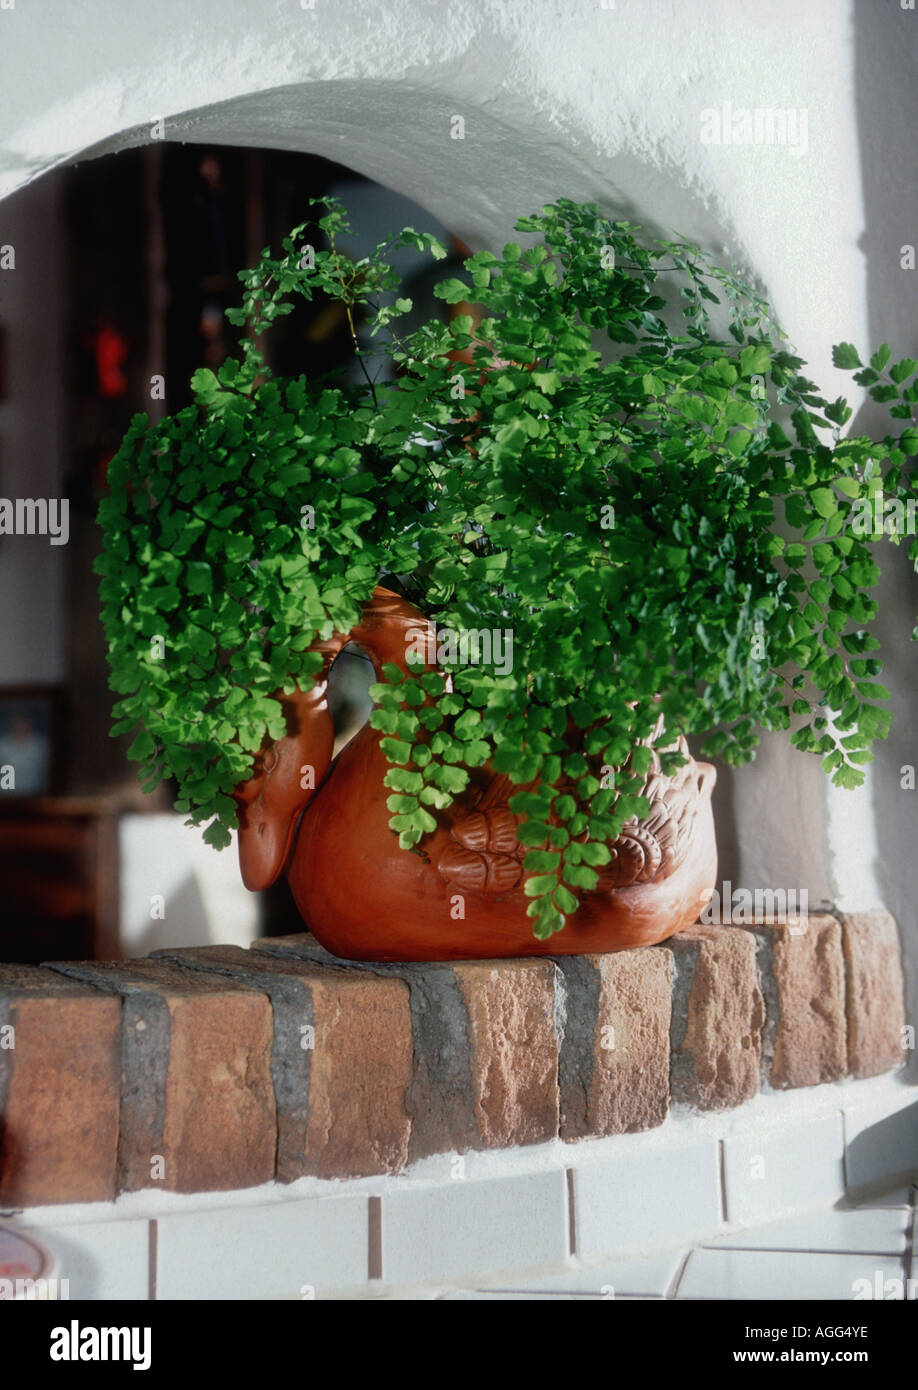 delta maidenhair (Adiantum raddianum, Adiantum cuneatum), potted plant in a room Stock Photo